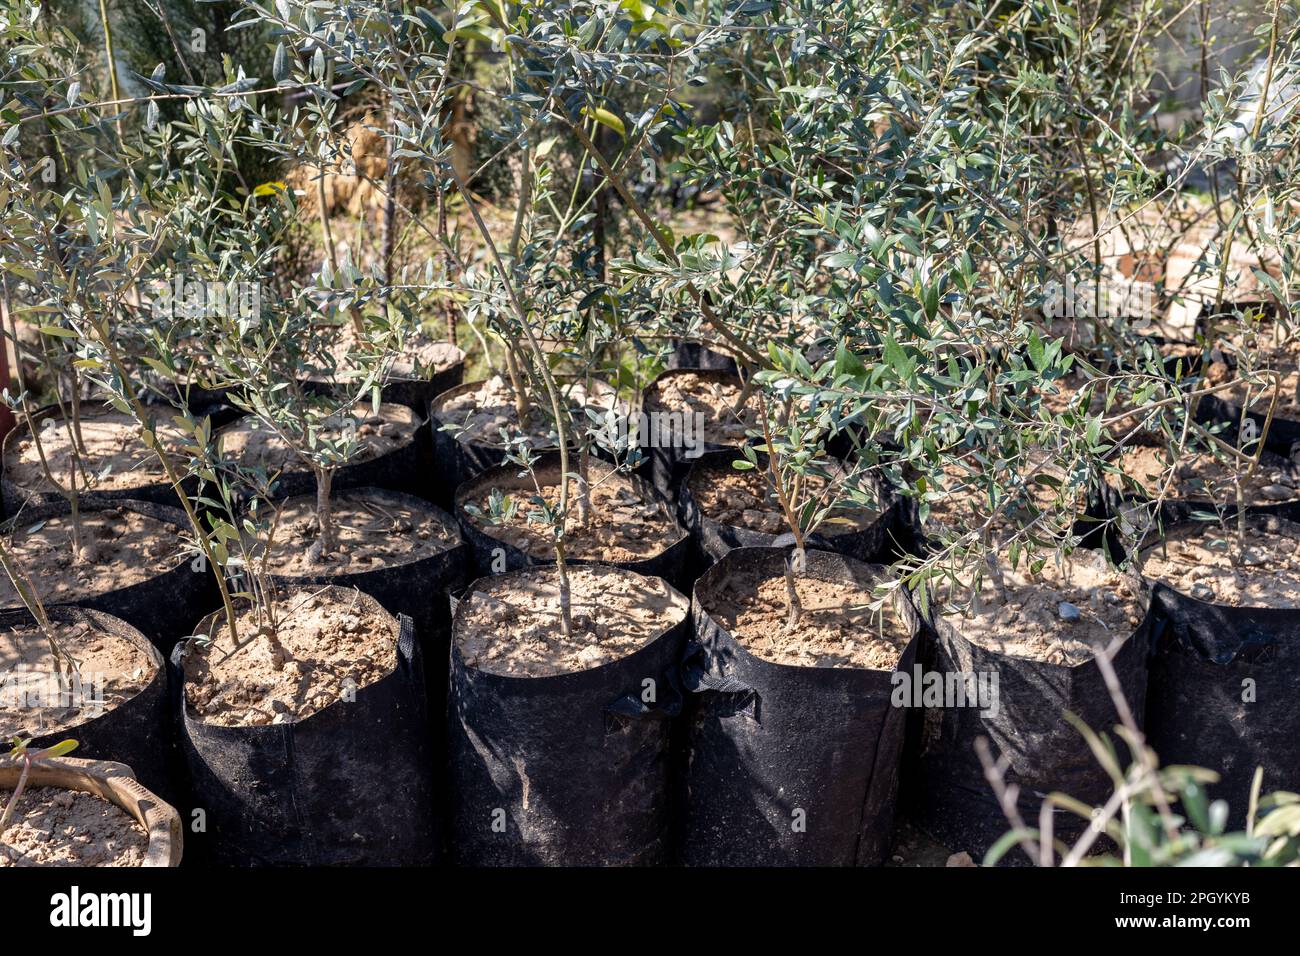 Les plantes d'olive dans les sacs de culture en gros plan Banque D'Images